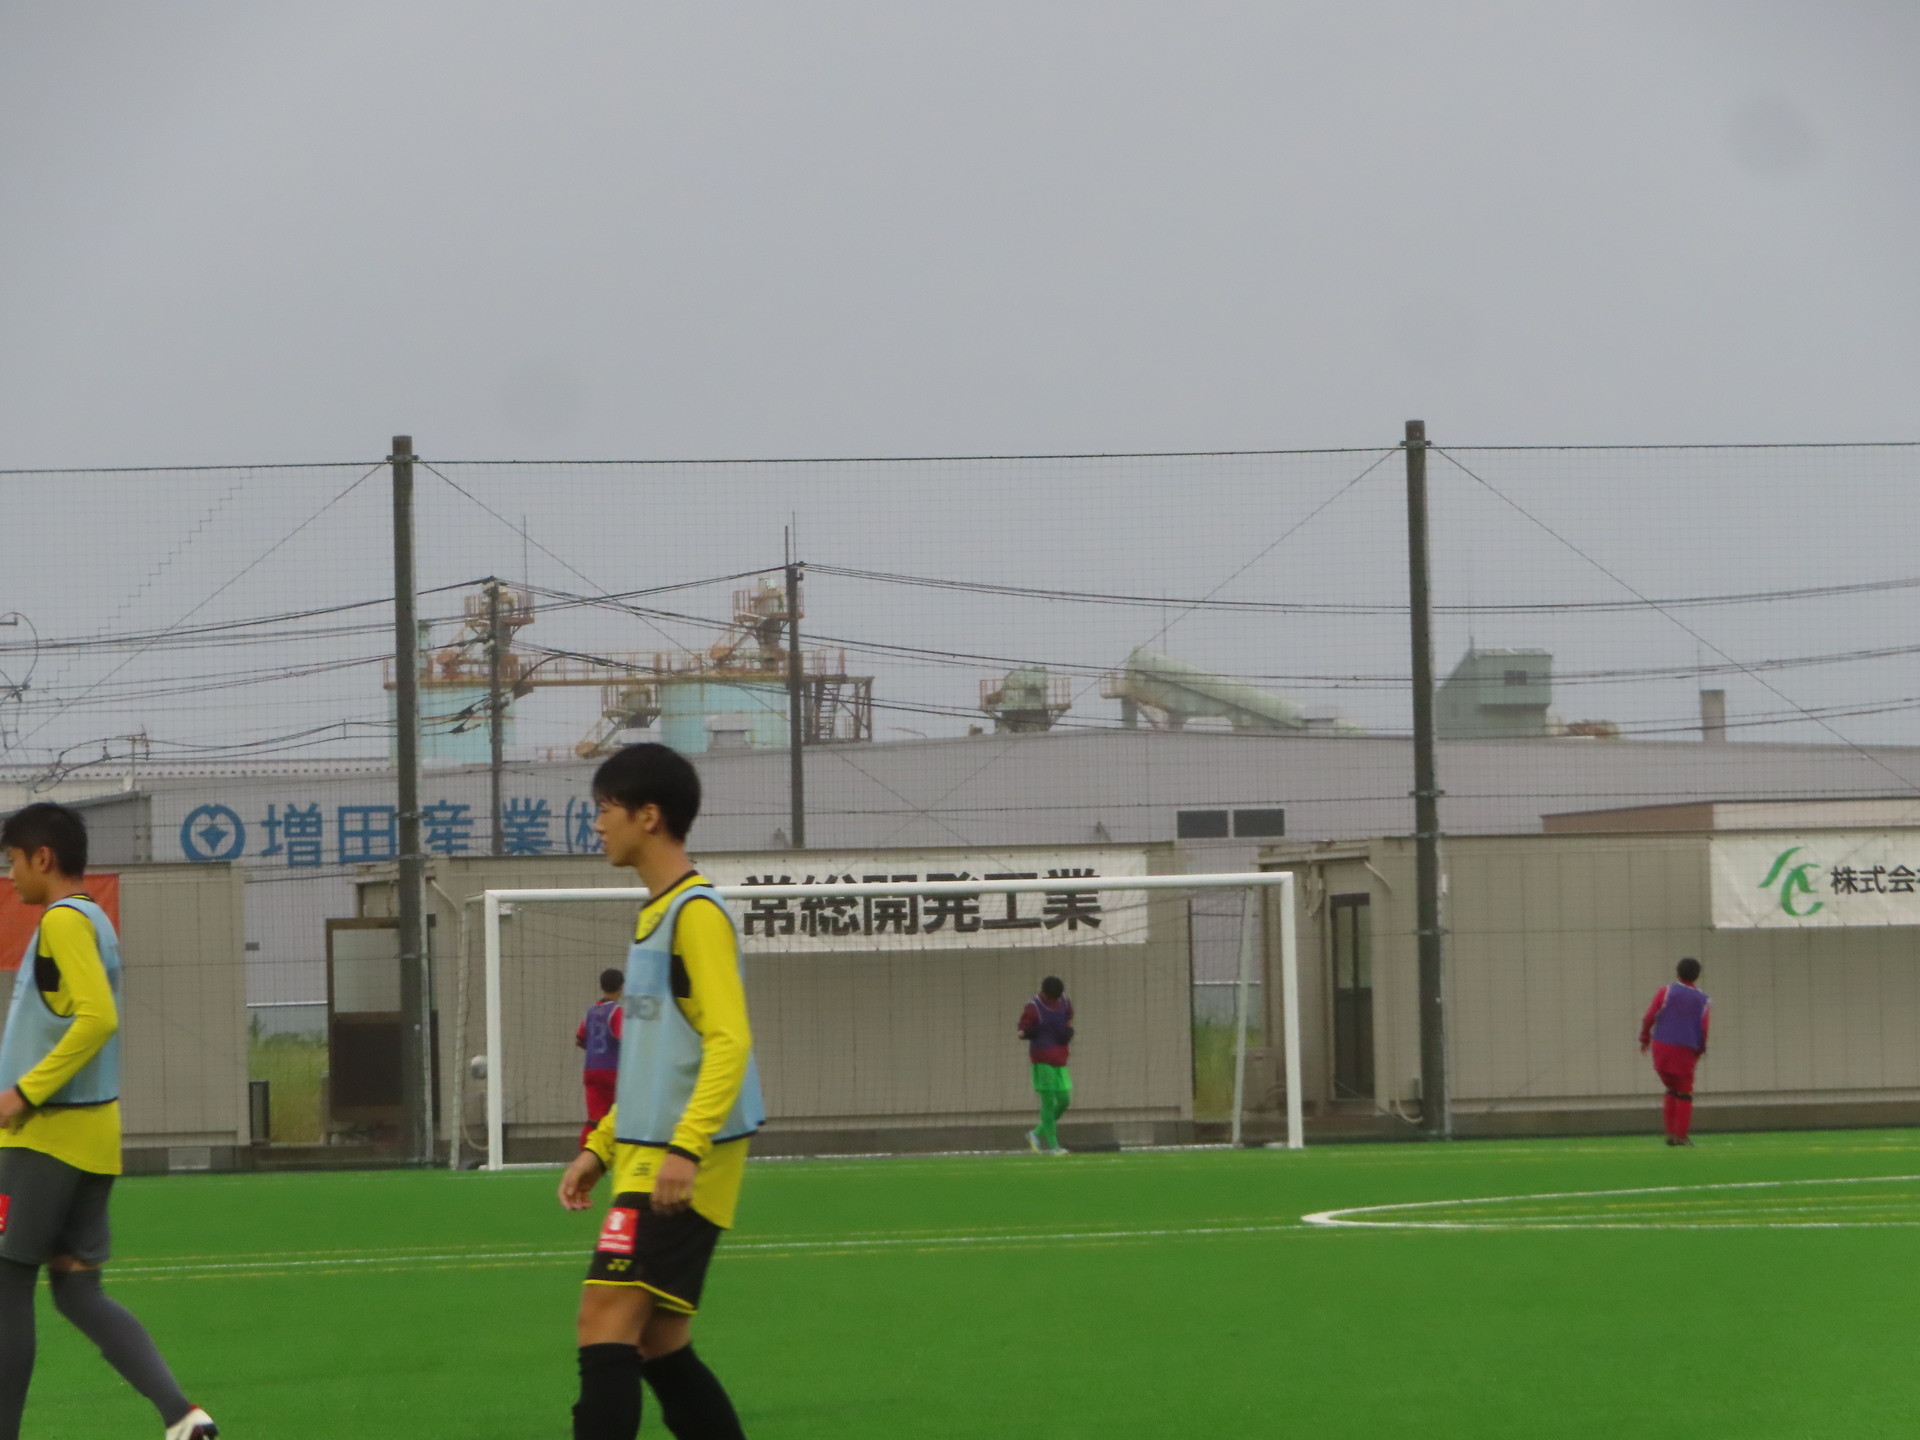 22 09 24 関東ユース U 15 サッカーリーグ 2部 第16節 鹿島戦 鹿島アントラーズアカデミーフィールド 0 0 あああ